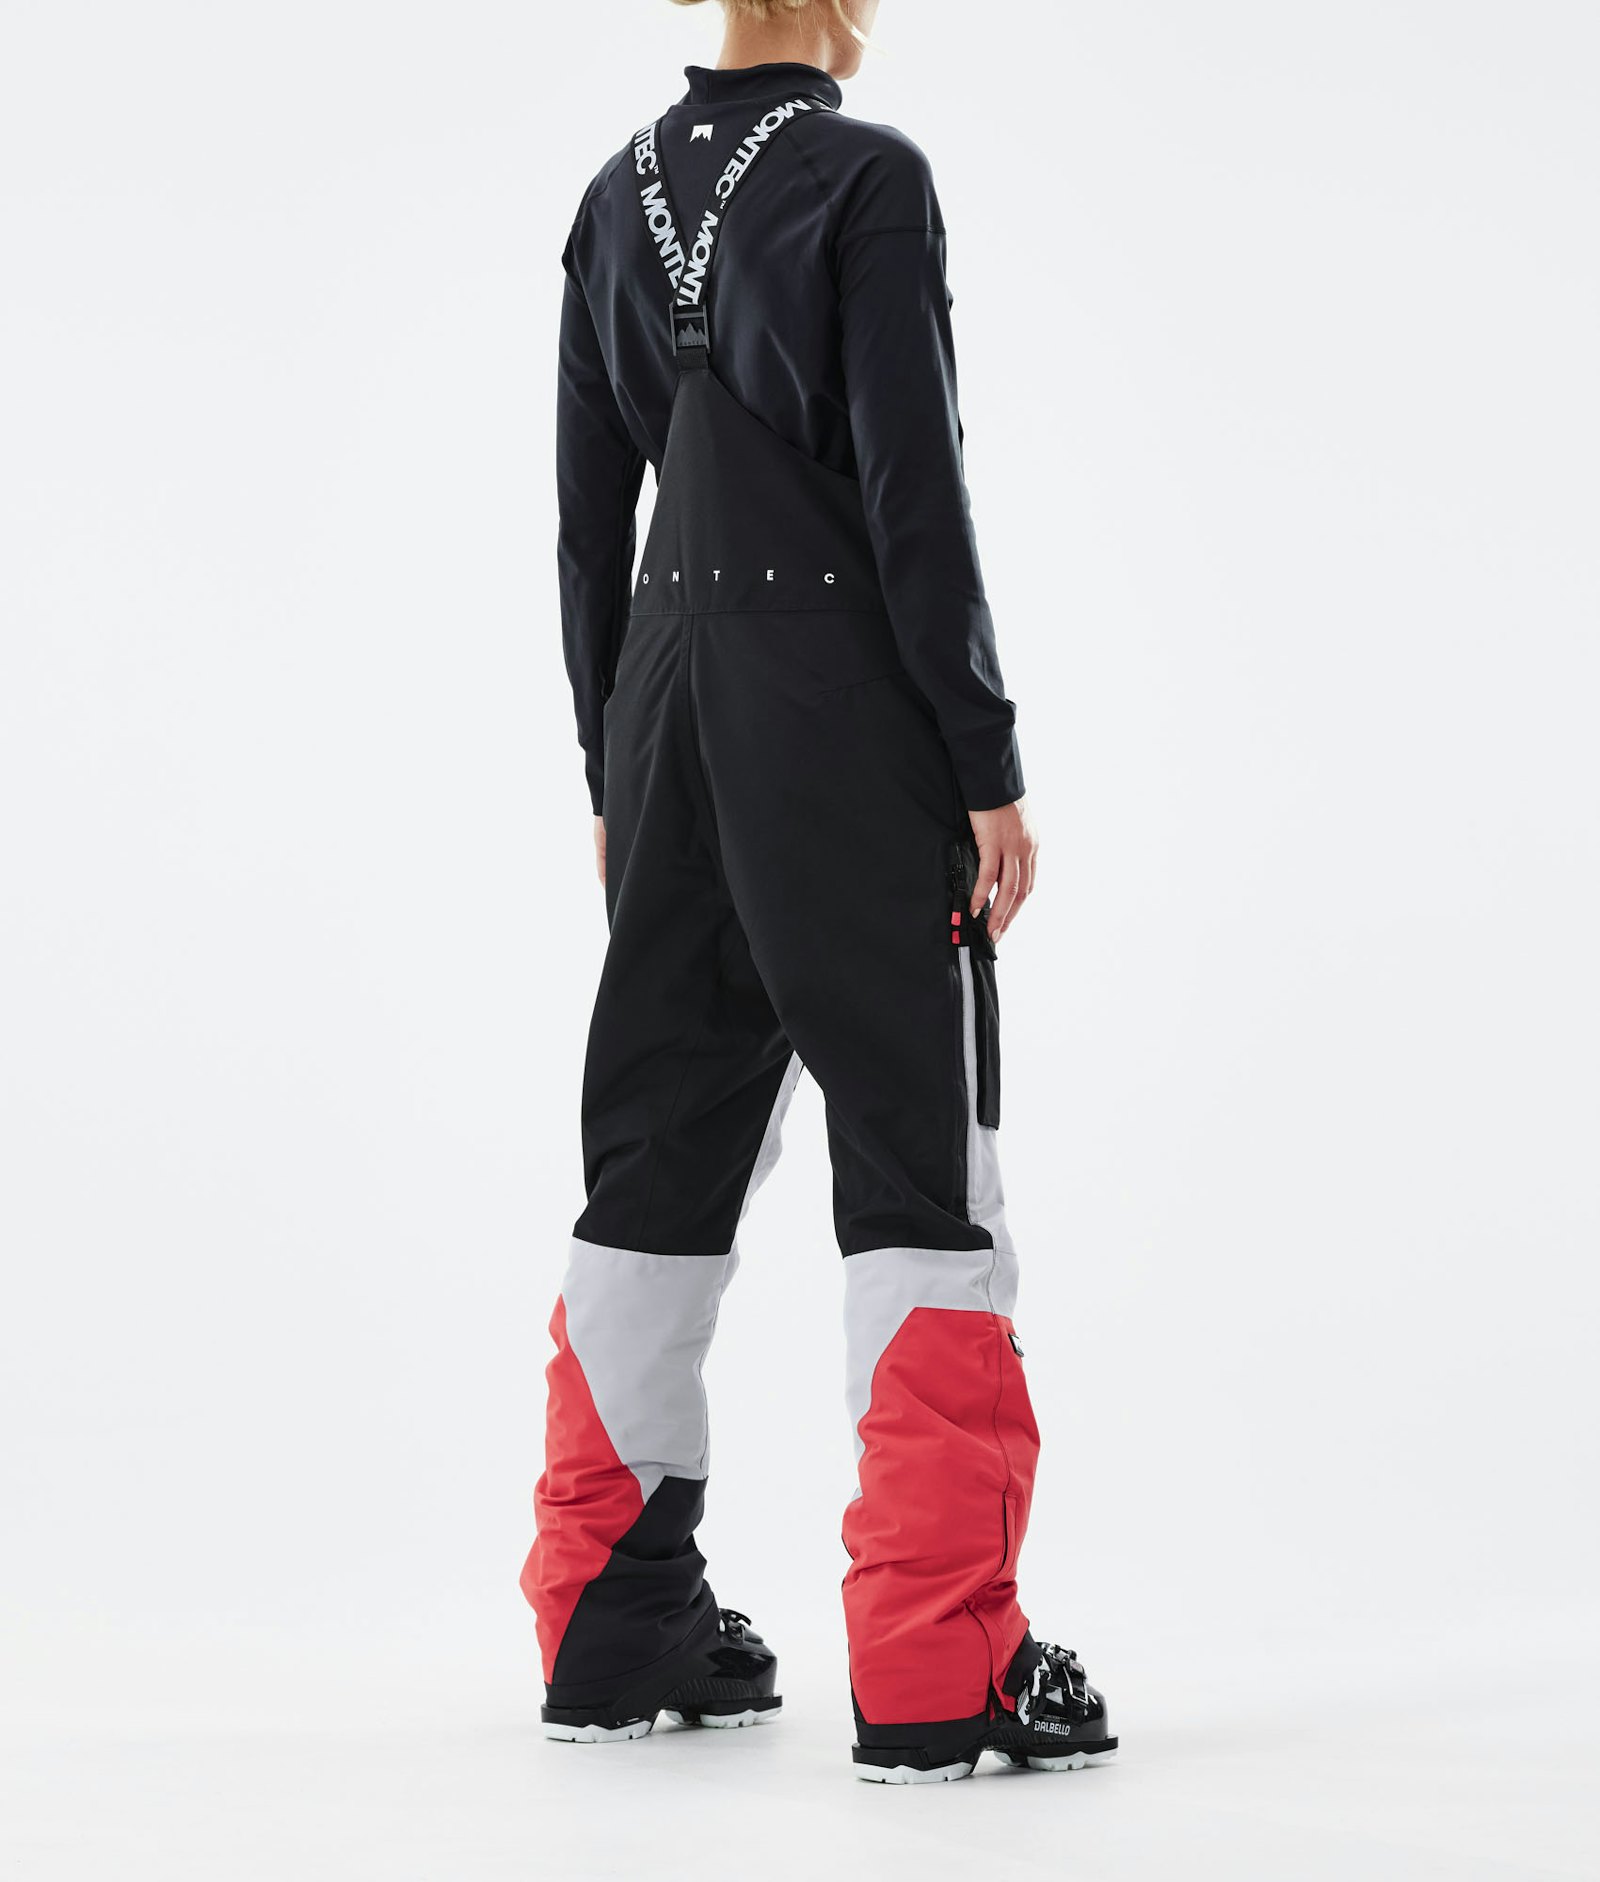 Montec Fawk W 2021 Spodnie Narciarskie Kobiety Black/Light Grey/Coral